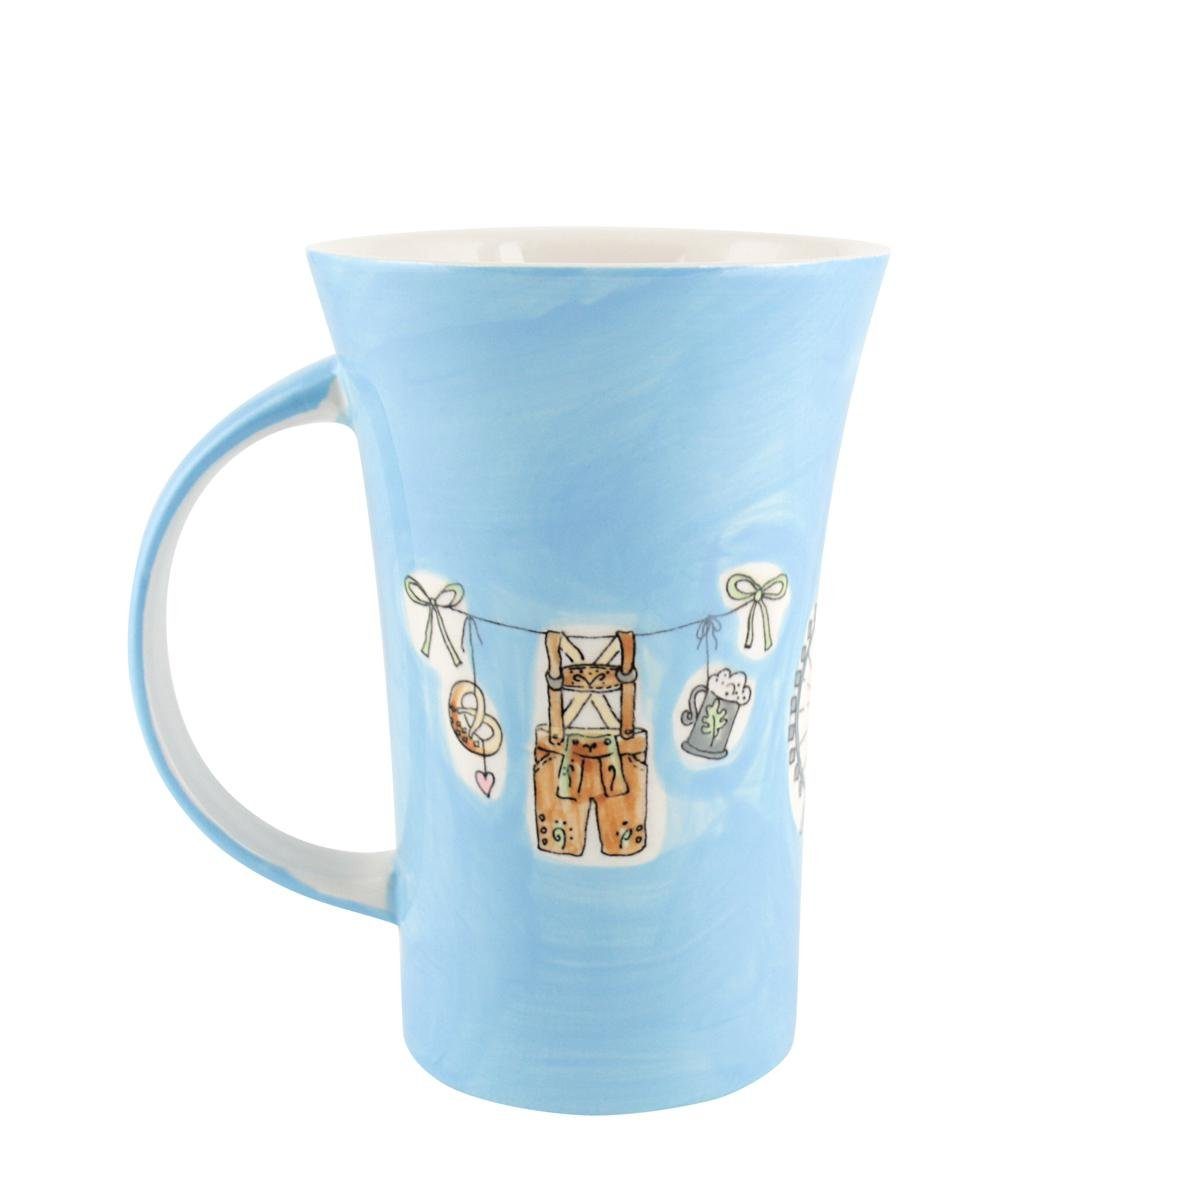 Riesenrad, Design Keramik-Becher Mila Coffee-Pot Mila Becher Keramik München